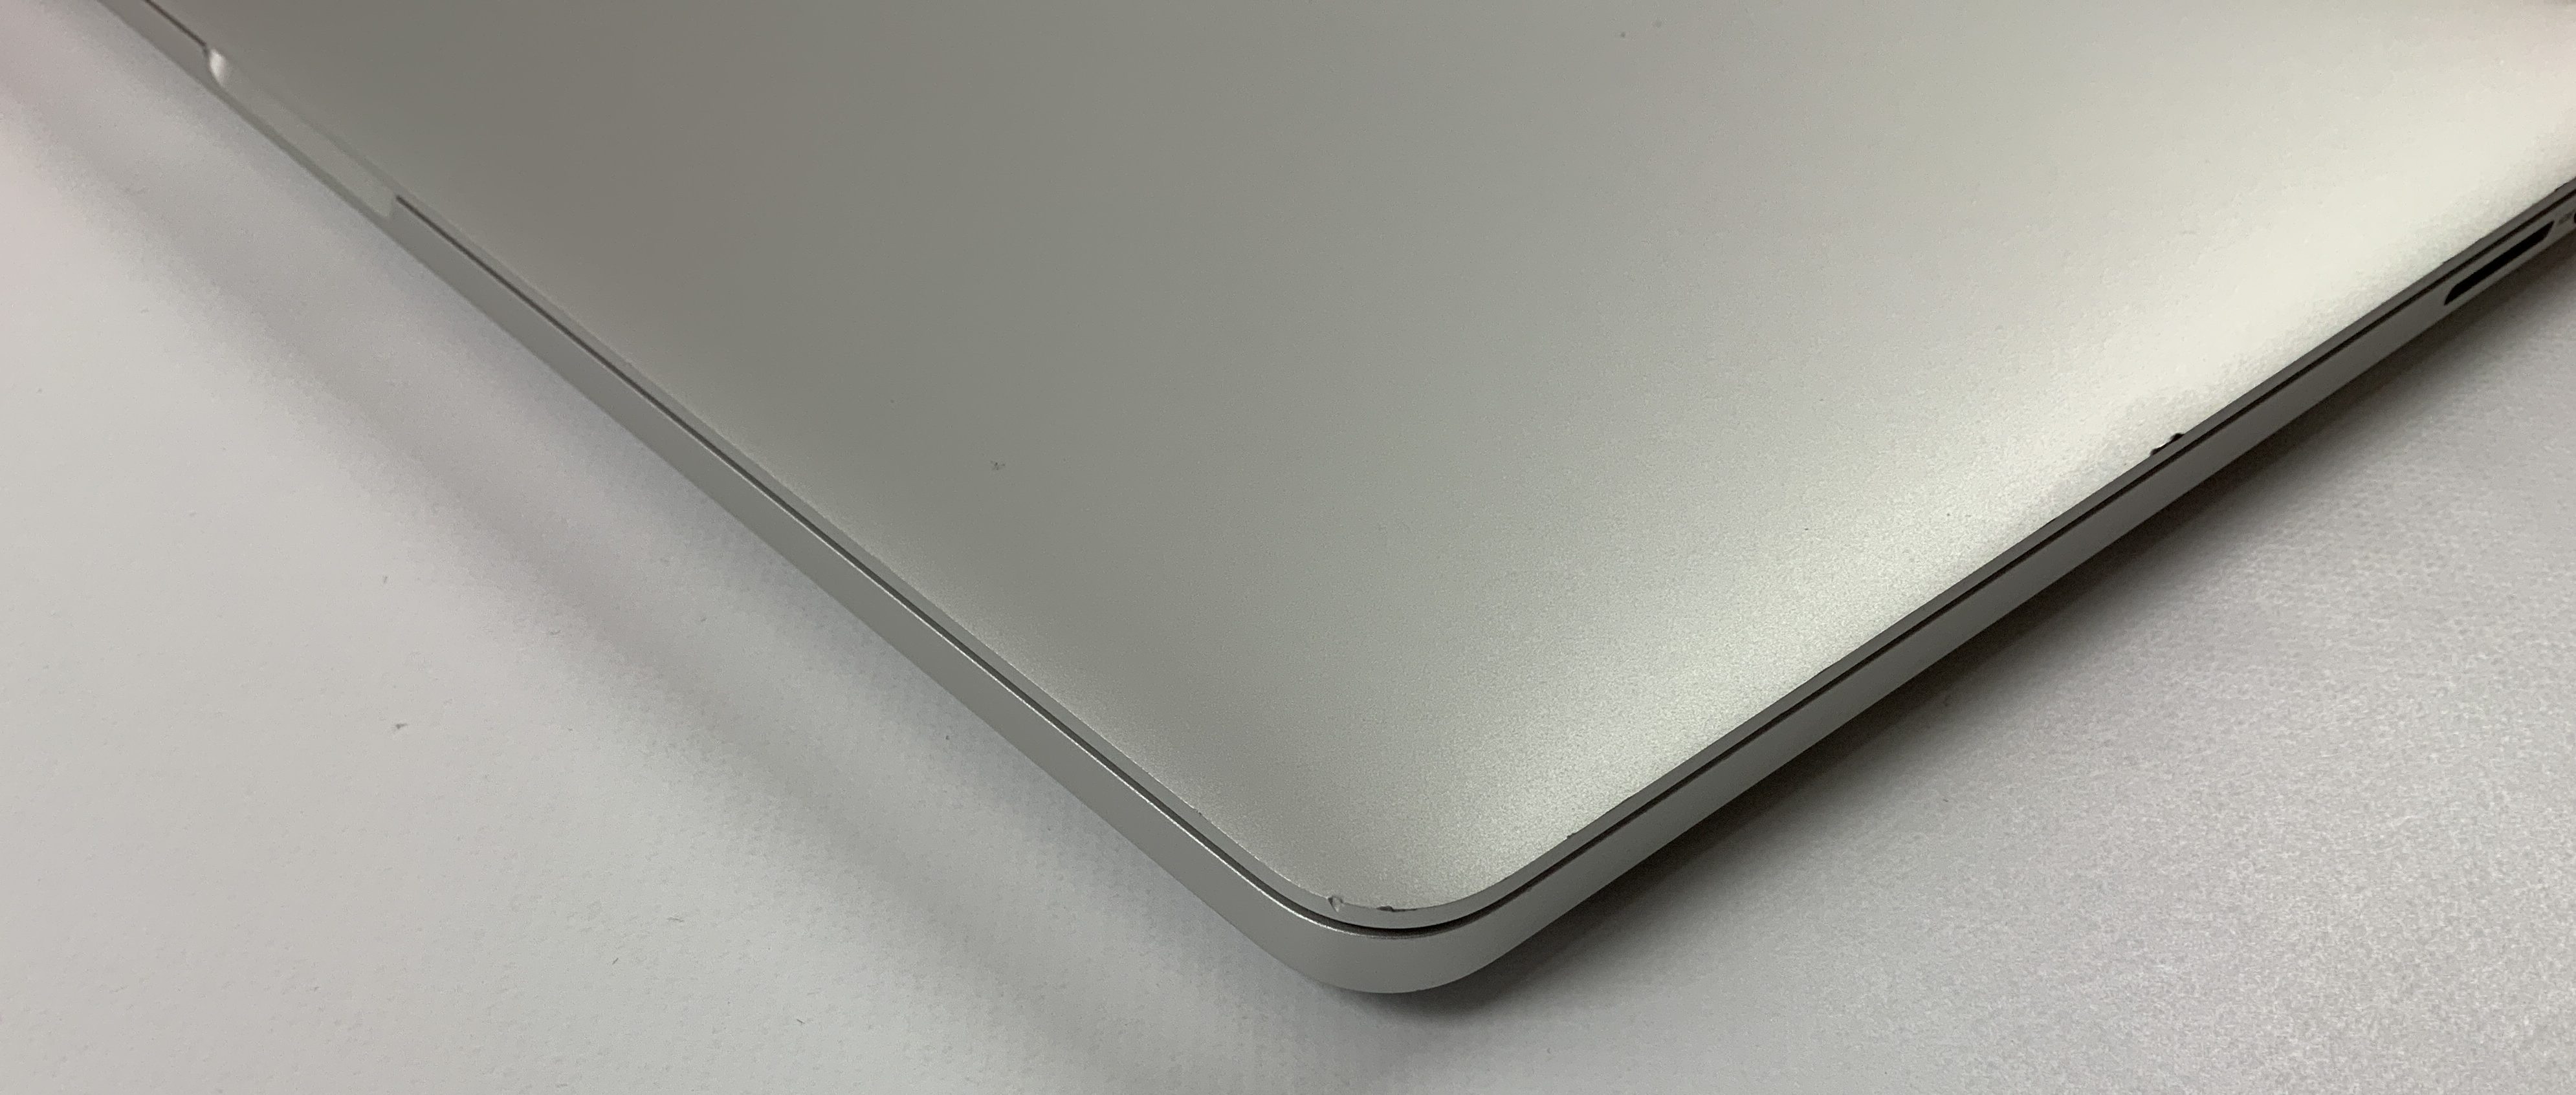 MacBook Pro Retina 15" Mid 2015 (Intel Quad-Core i7 2.2 GHz 16 GB RAM 256 GB SSD), Intel Quad-Core i7 2.2 GHz, 16 GB RAM, 256 GB SSD, immagine 4